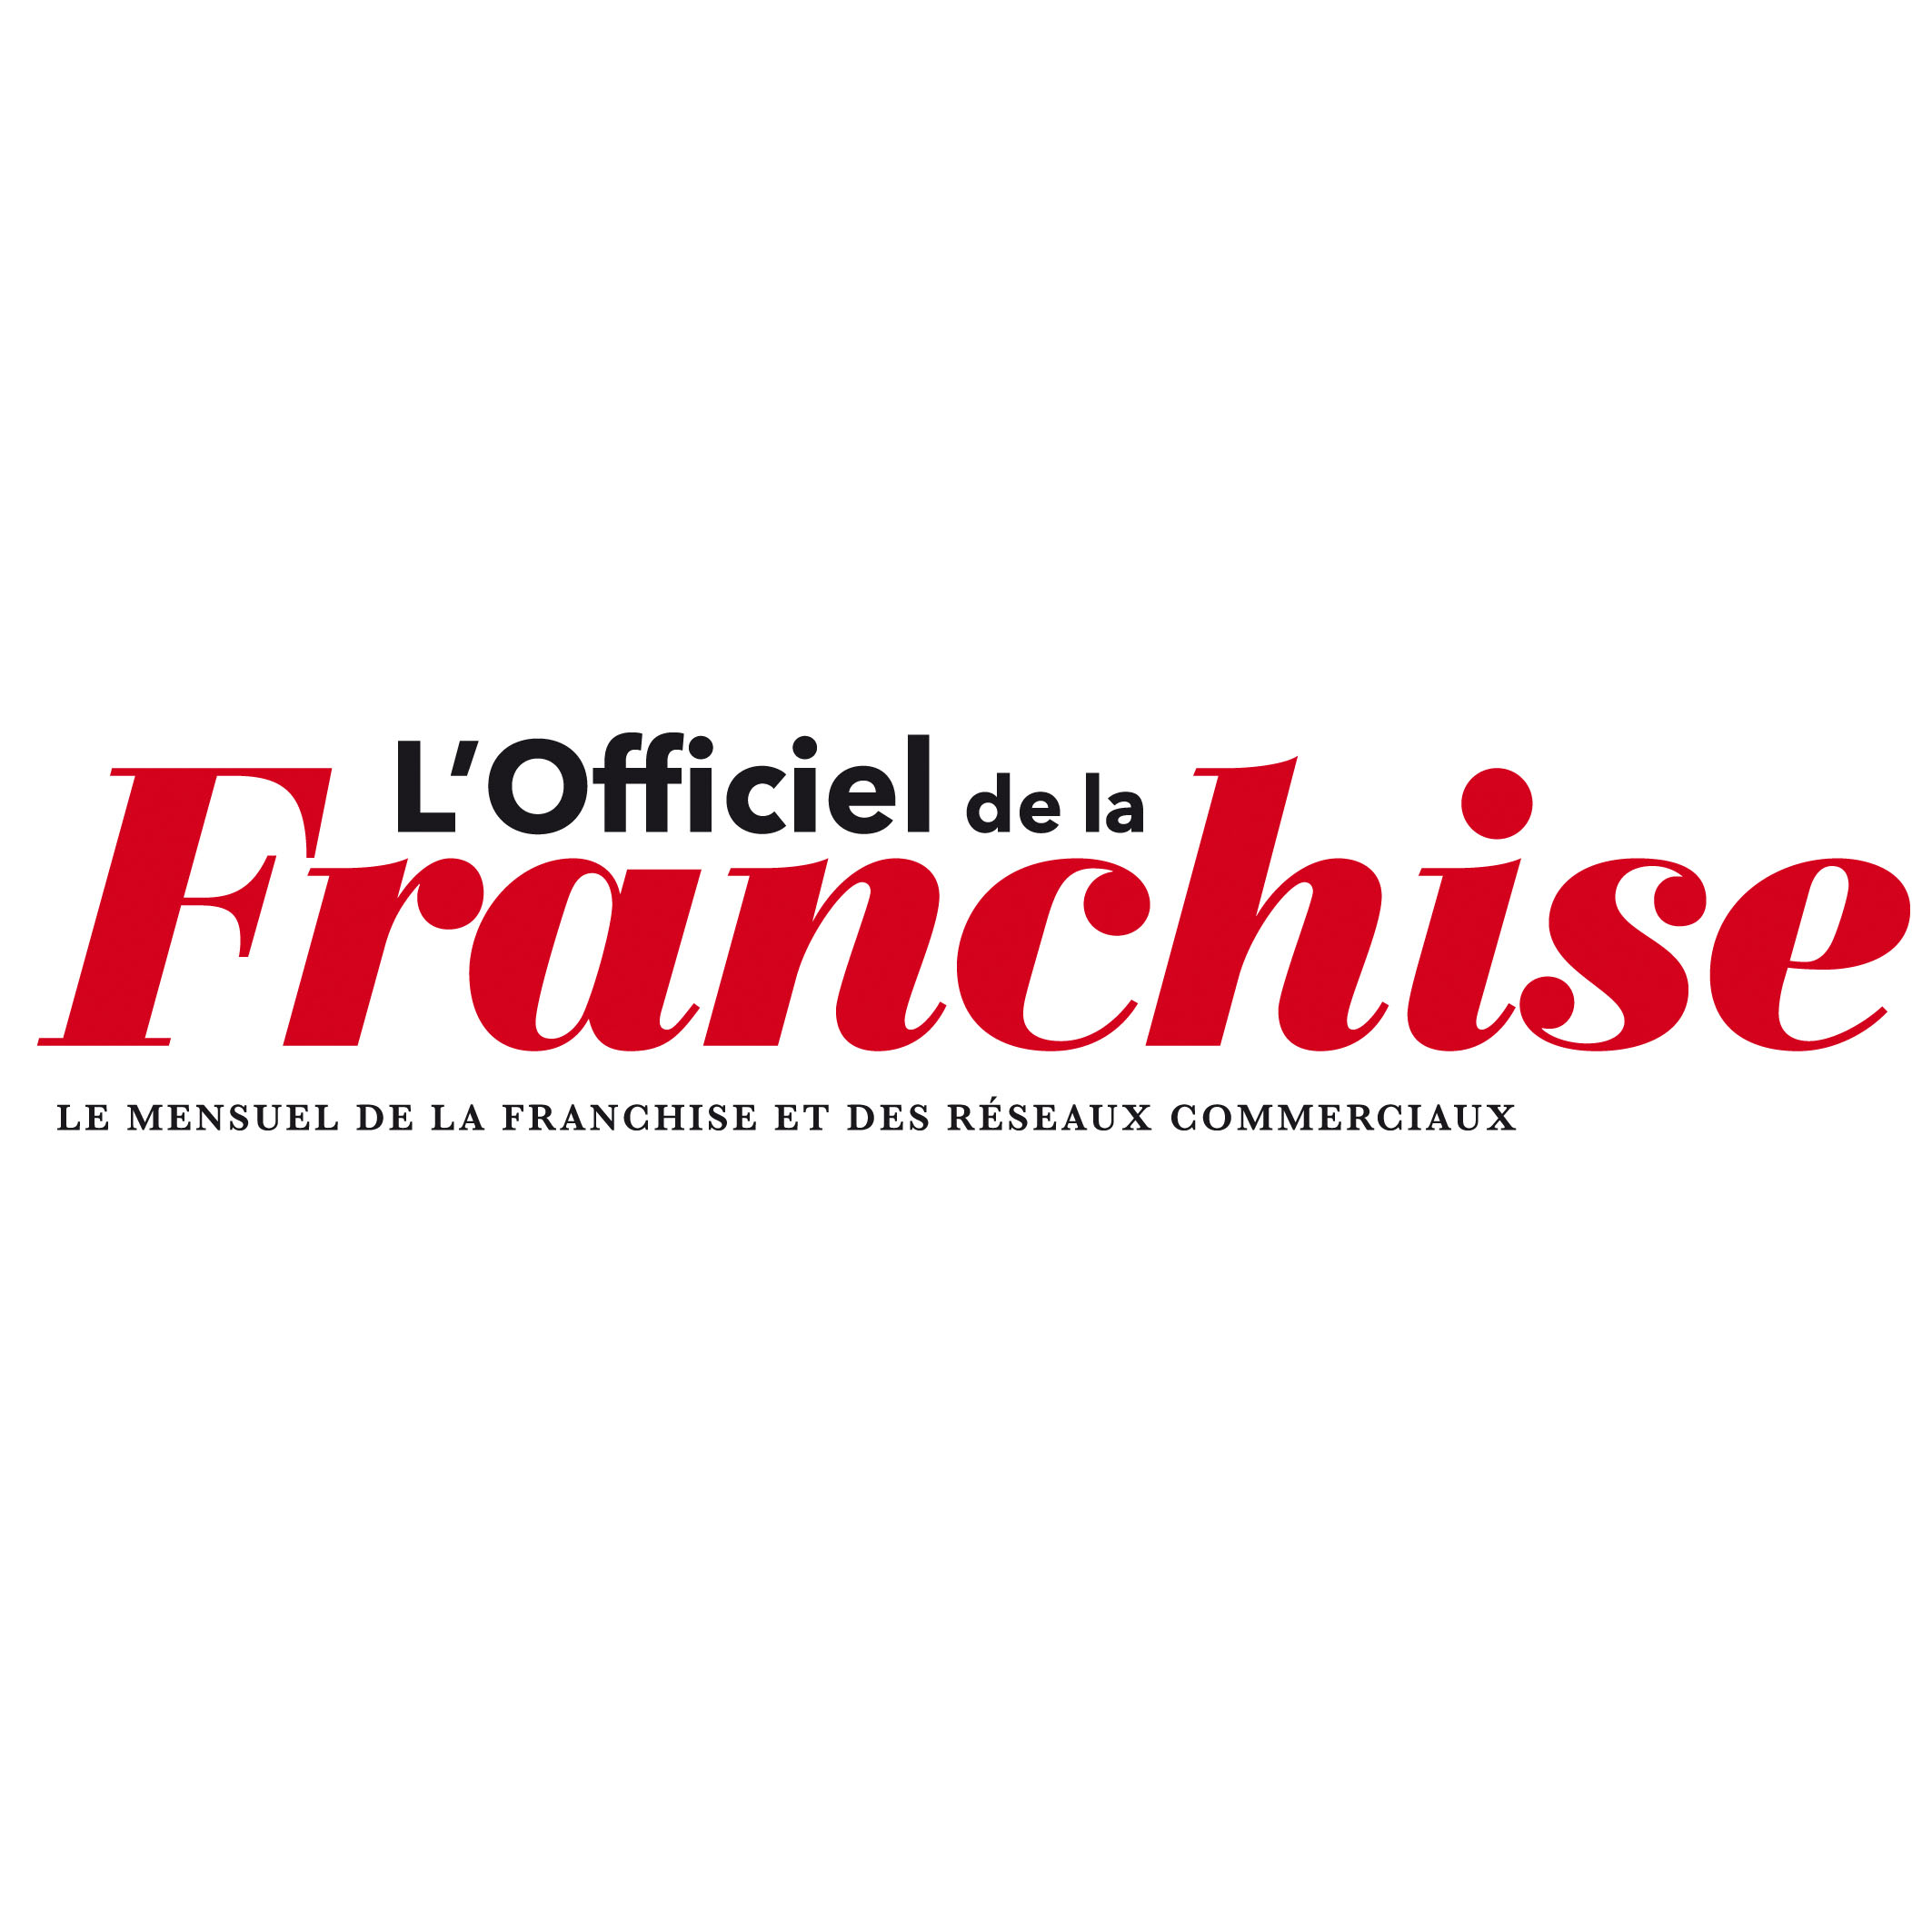 Responsabilité partielle du franchisé qui a librement négocié son contrat de franchise (L'Officiel de la Franchise, décembre 2015)